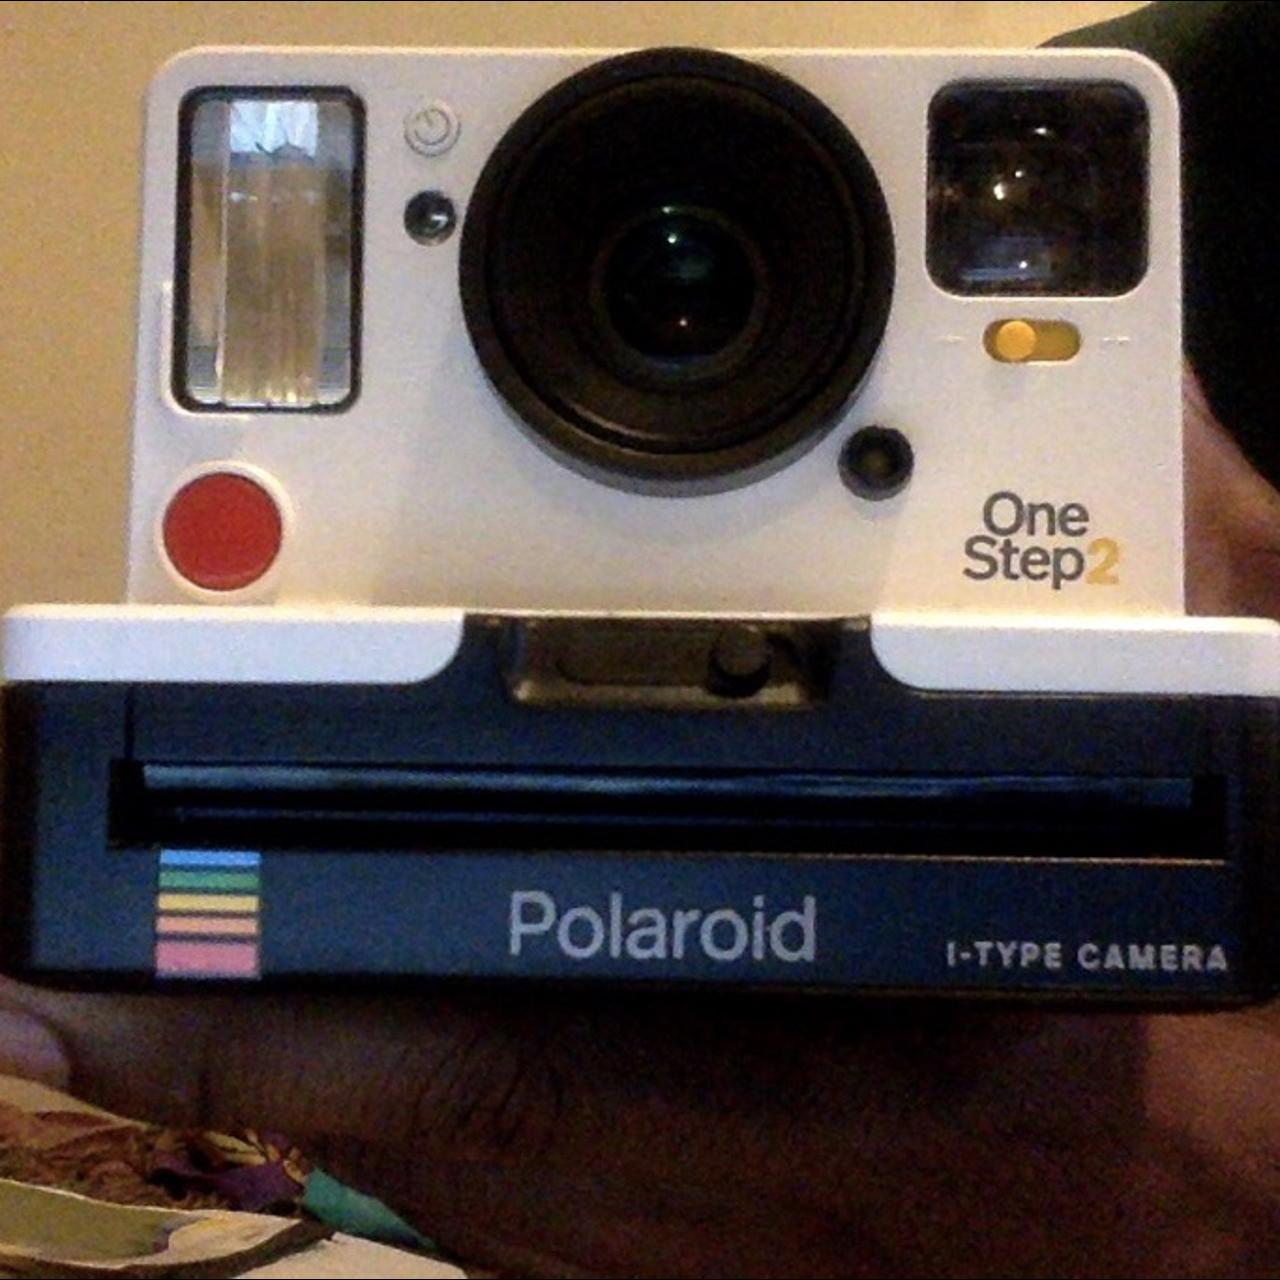 Polaroid Originals 9008 OneStep 2 VF - White